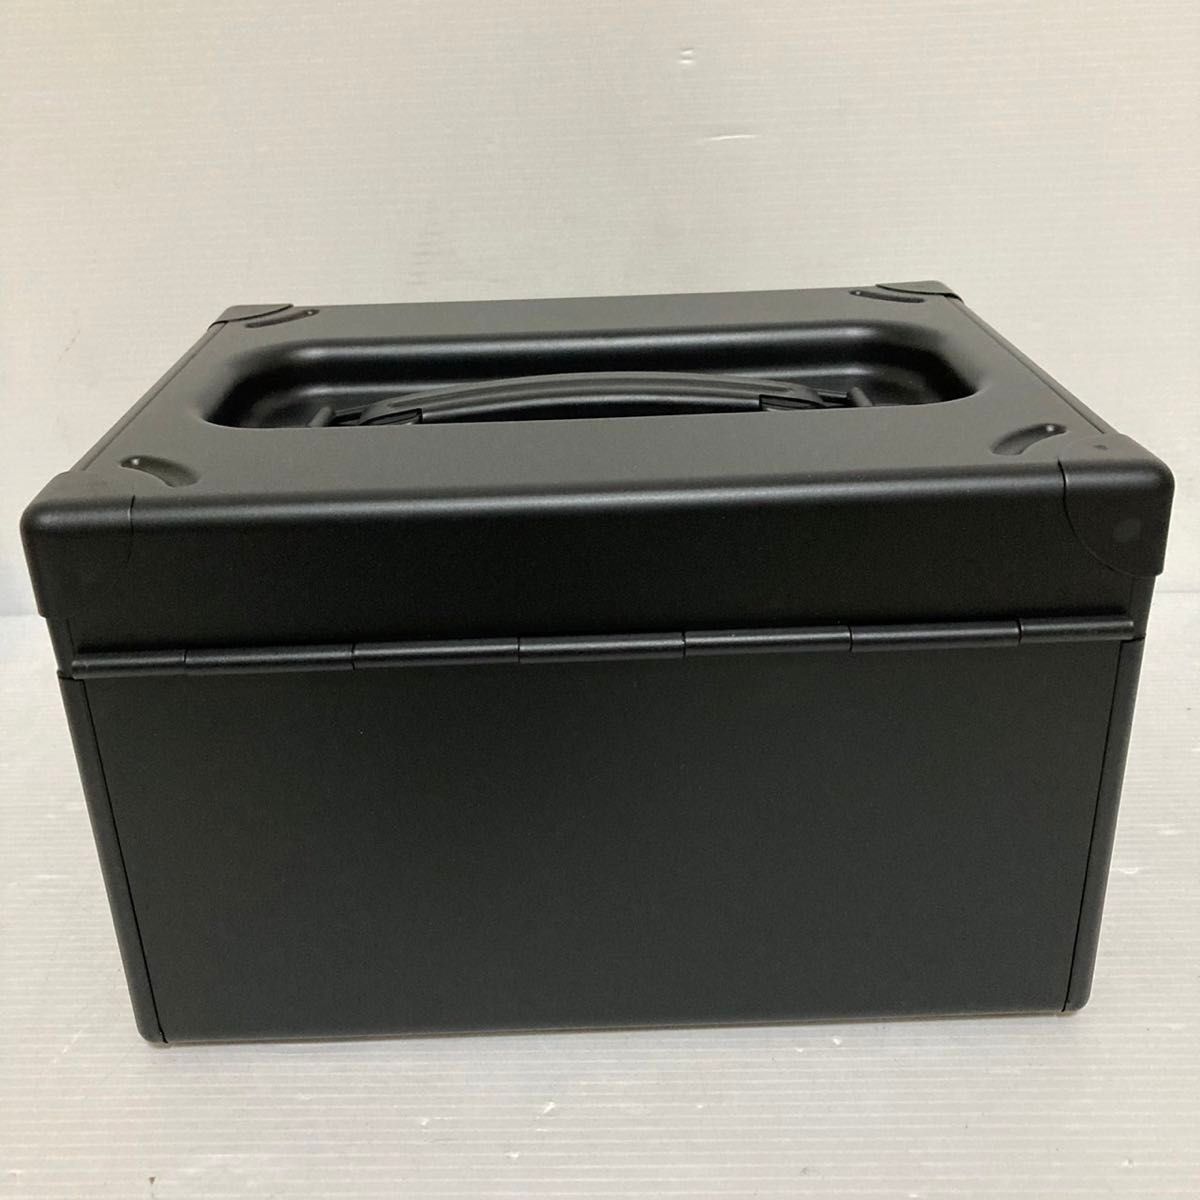 未使用品 いのうえ商店 道具箱 日本製 収納ボックス ツールボックス ミニツールボックス コンパクトサイズ/P032-31